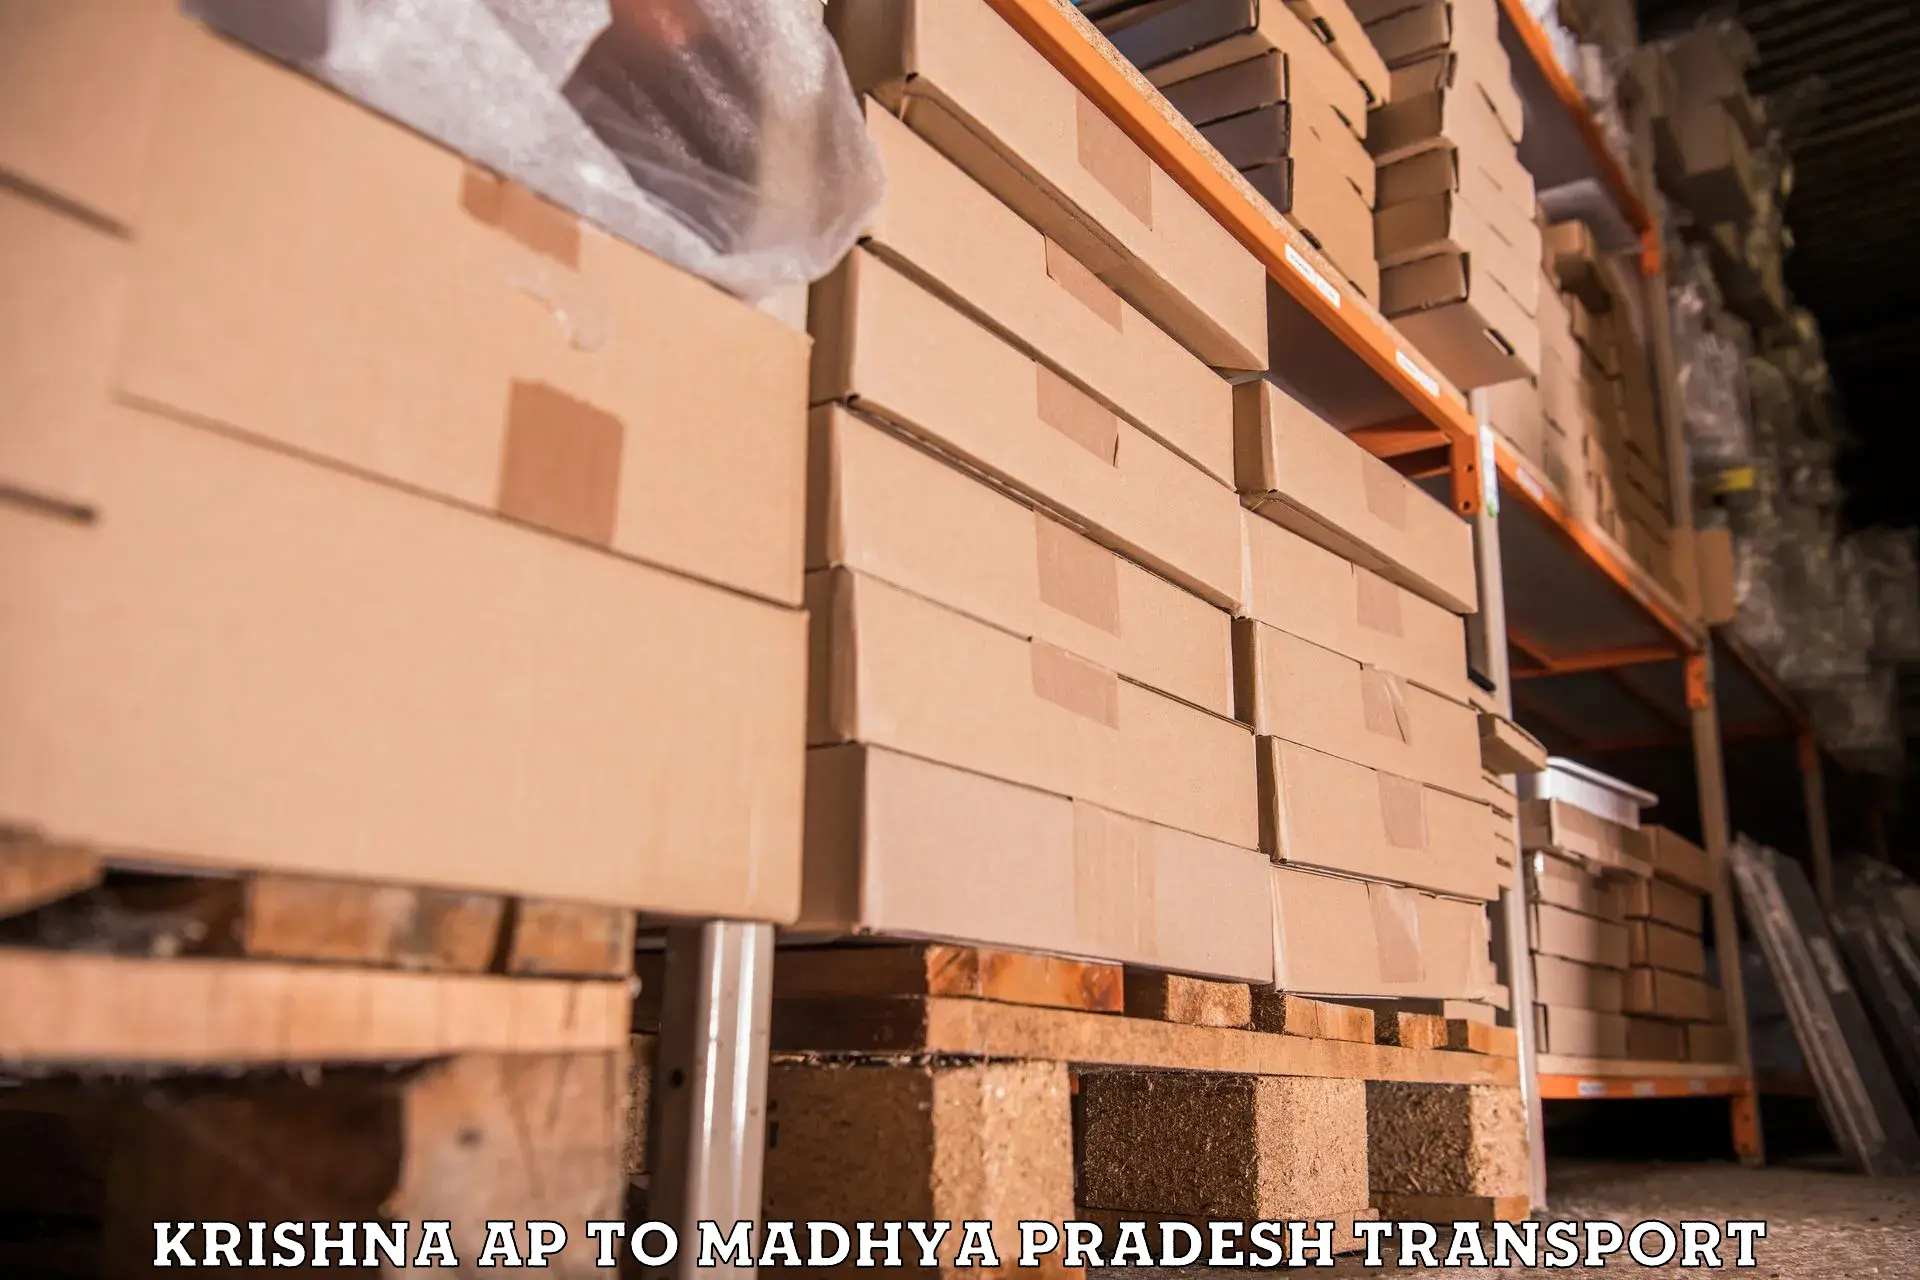 Furniture transport service Krishna AP to Khajuraho